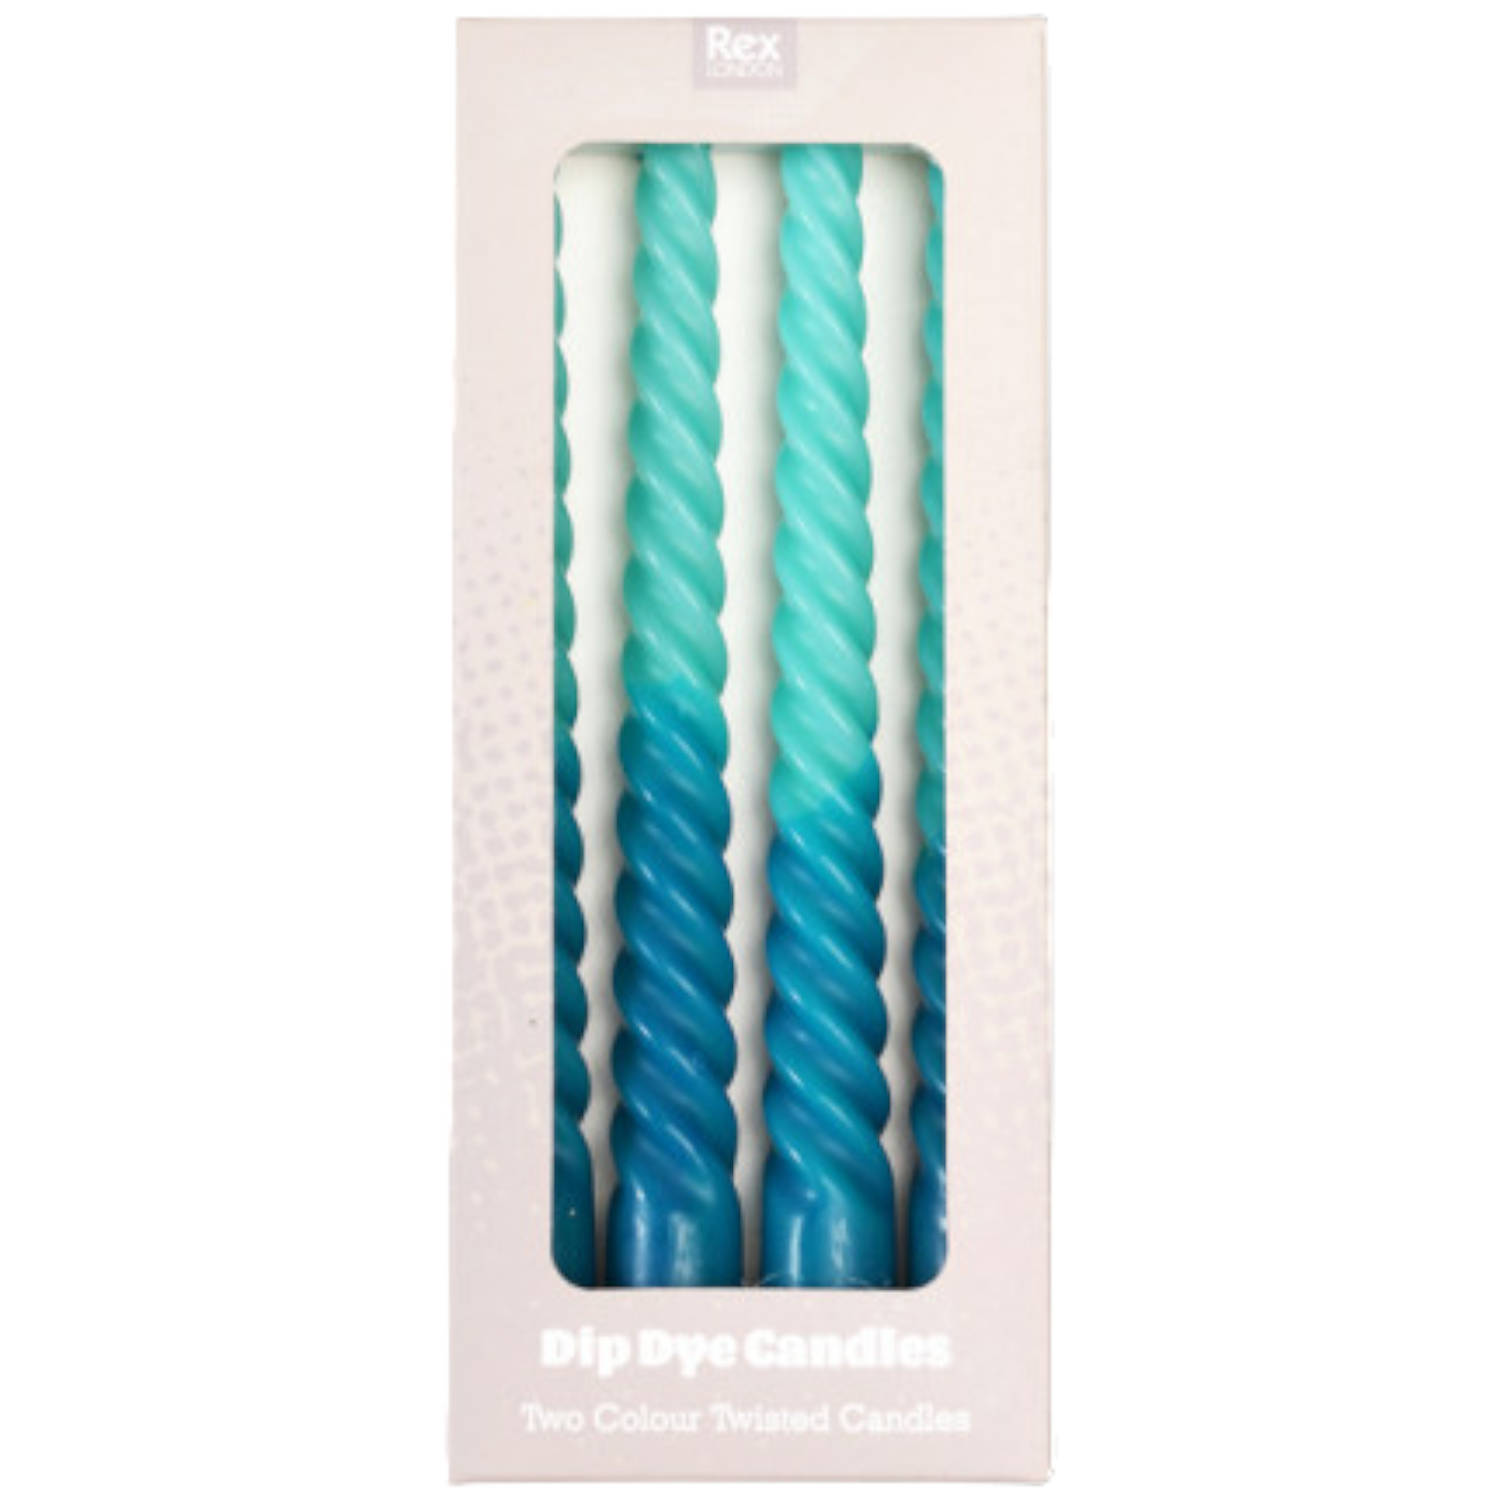 Rex London Dip dye spiraalkaarsen (set van 4) - Blauw - 2.1 x 21 cm